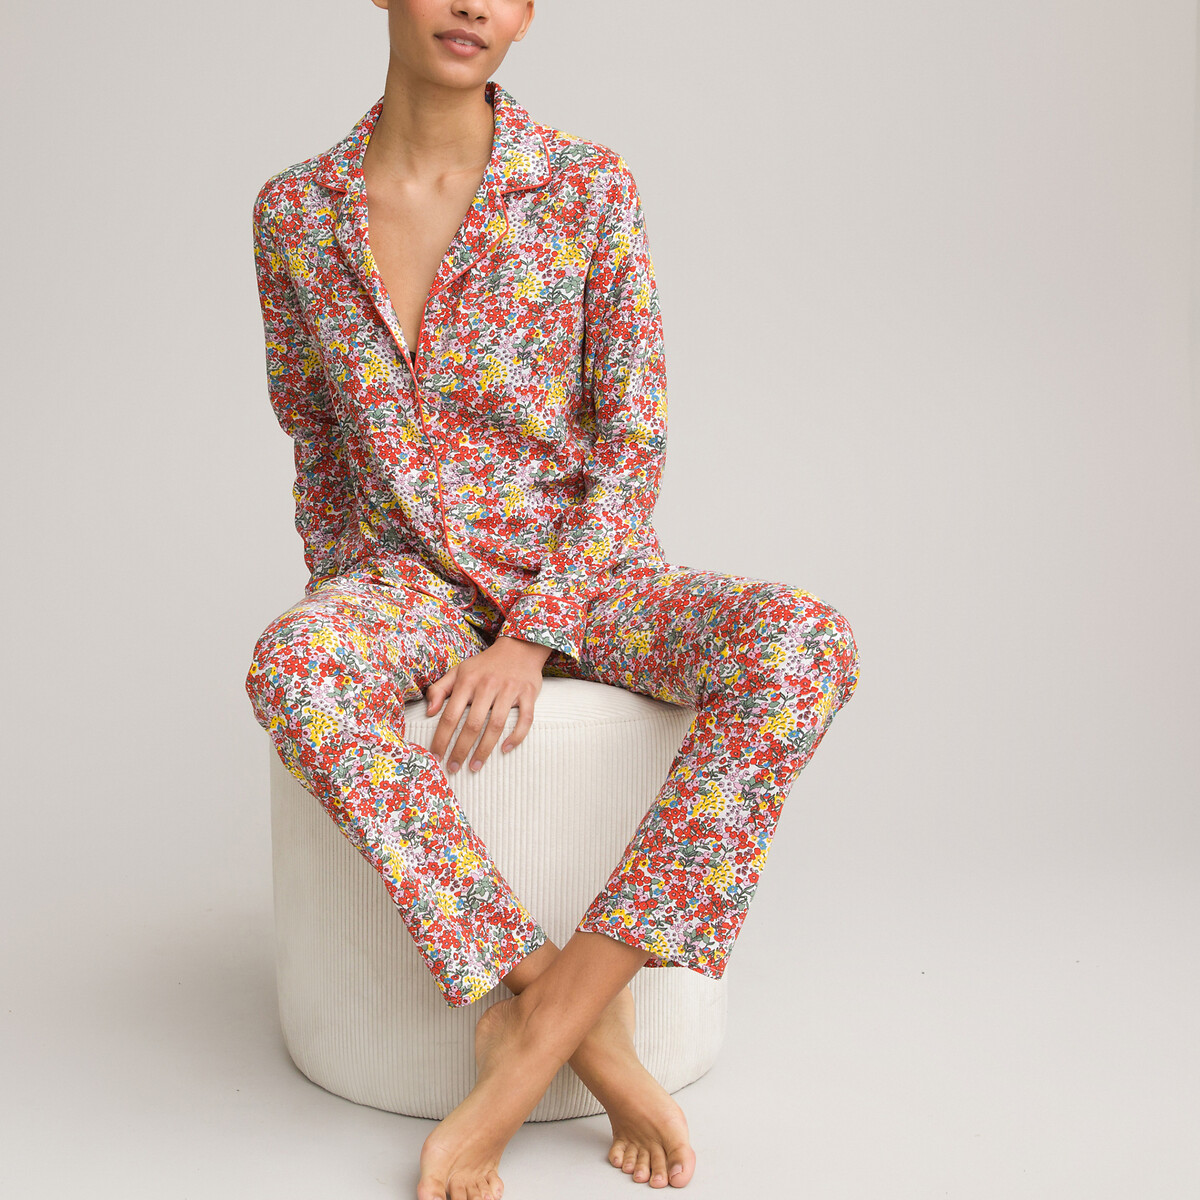 Mnemo Pyjama à Carreaux pour Femmes Ensembles de Pyjama en Coton pour l'hiver